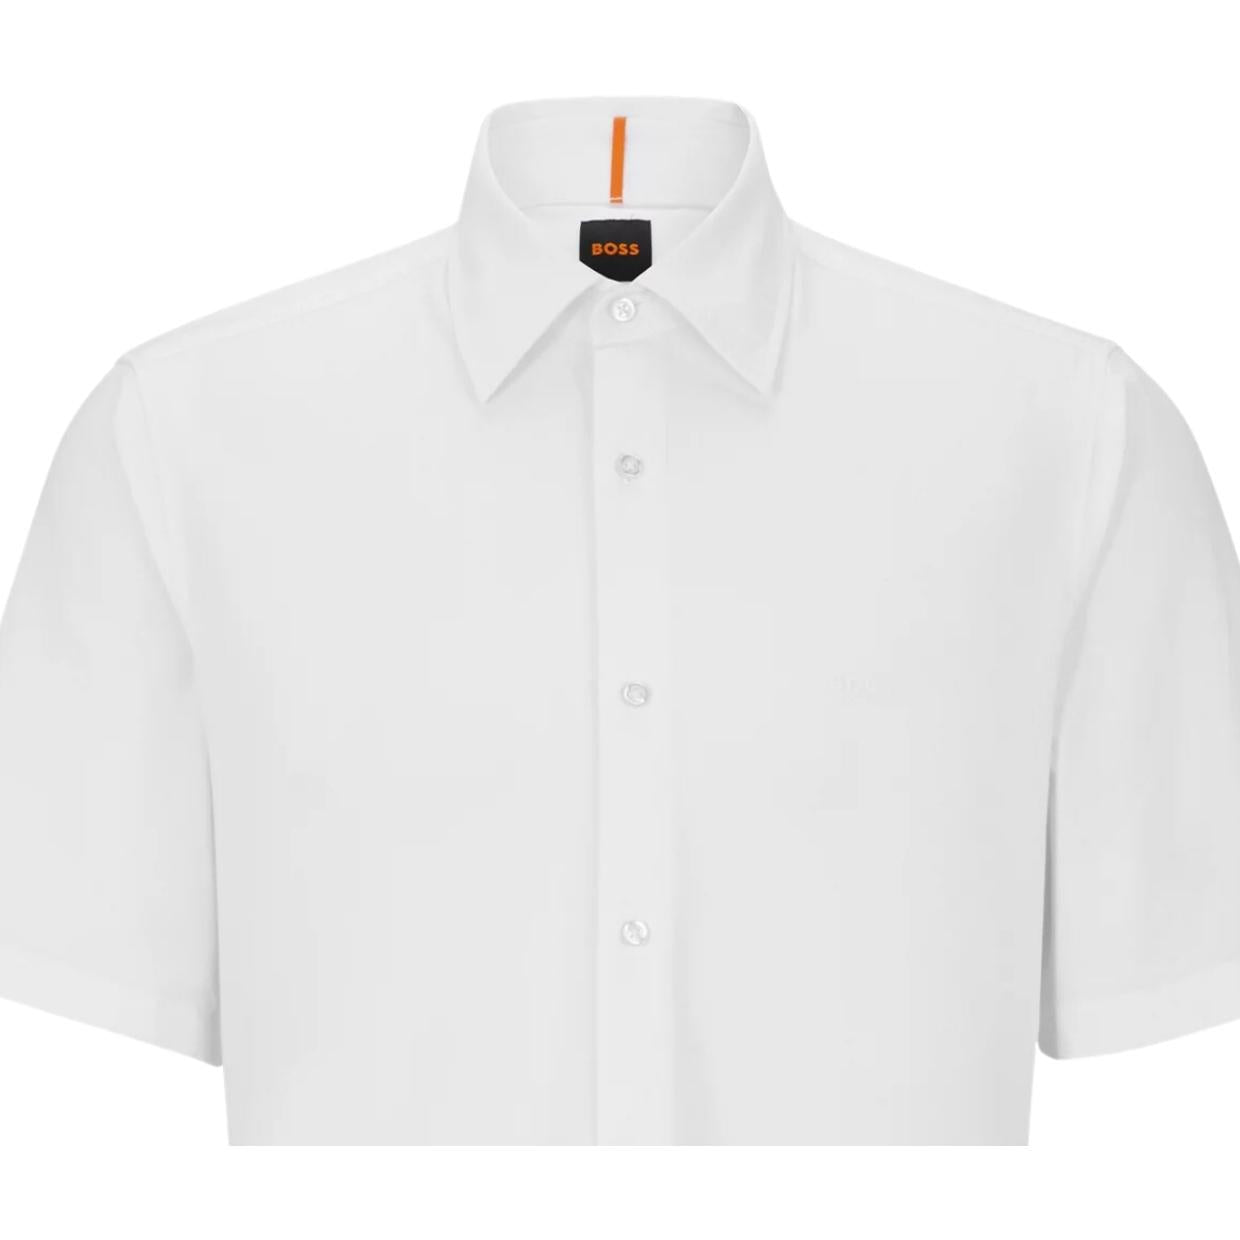 BOSS Embroidered Logo Rash 2 Short Sleeve White Shirt